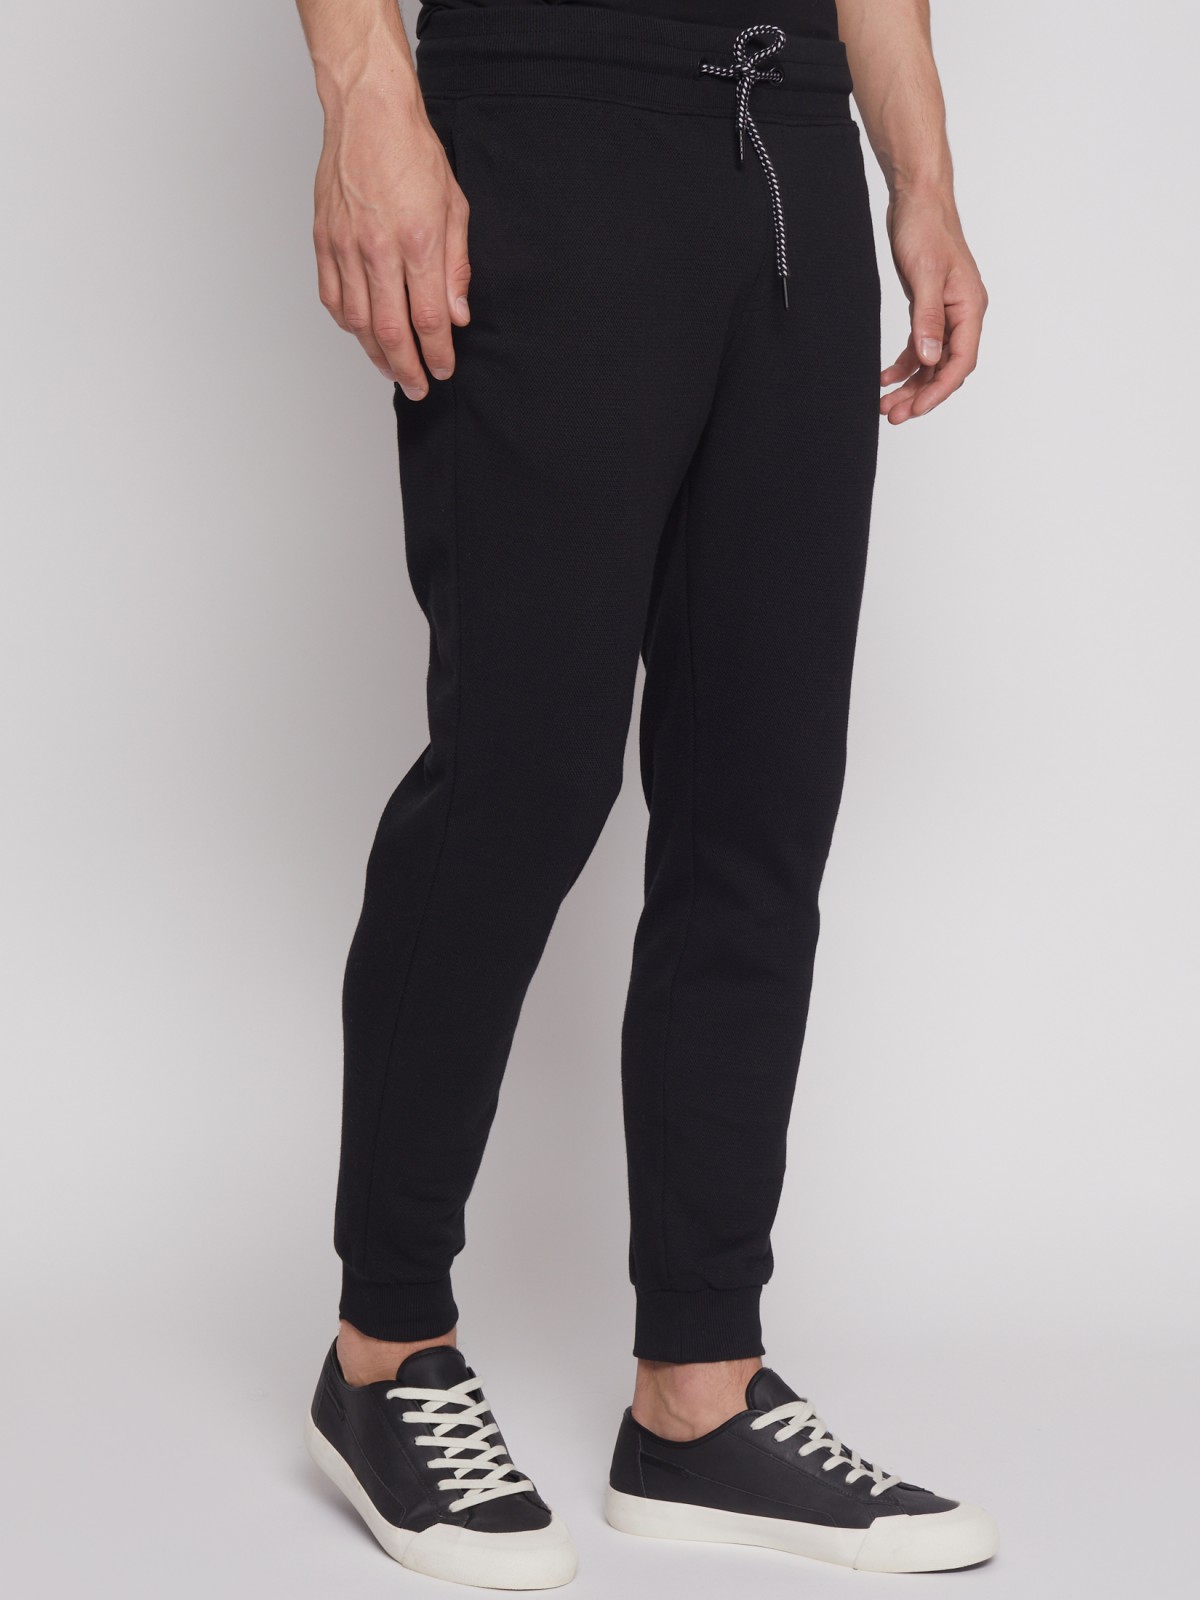 Спортивные брюки-джоггеры zolla 21231762F012, цвет черный, размер S - фото 3